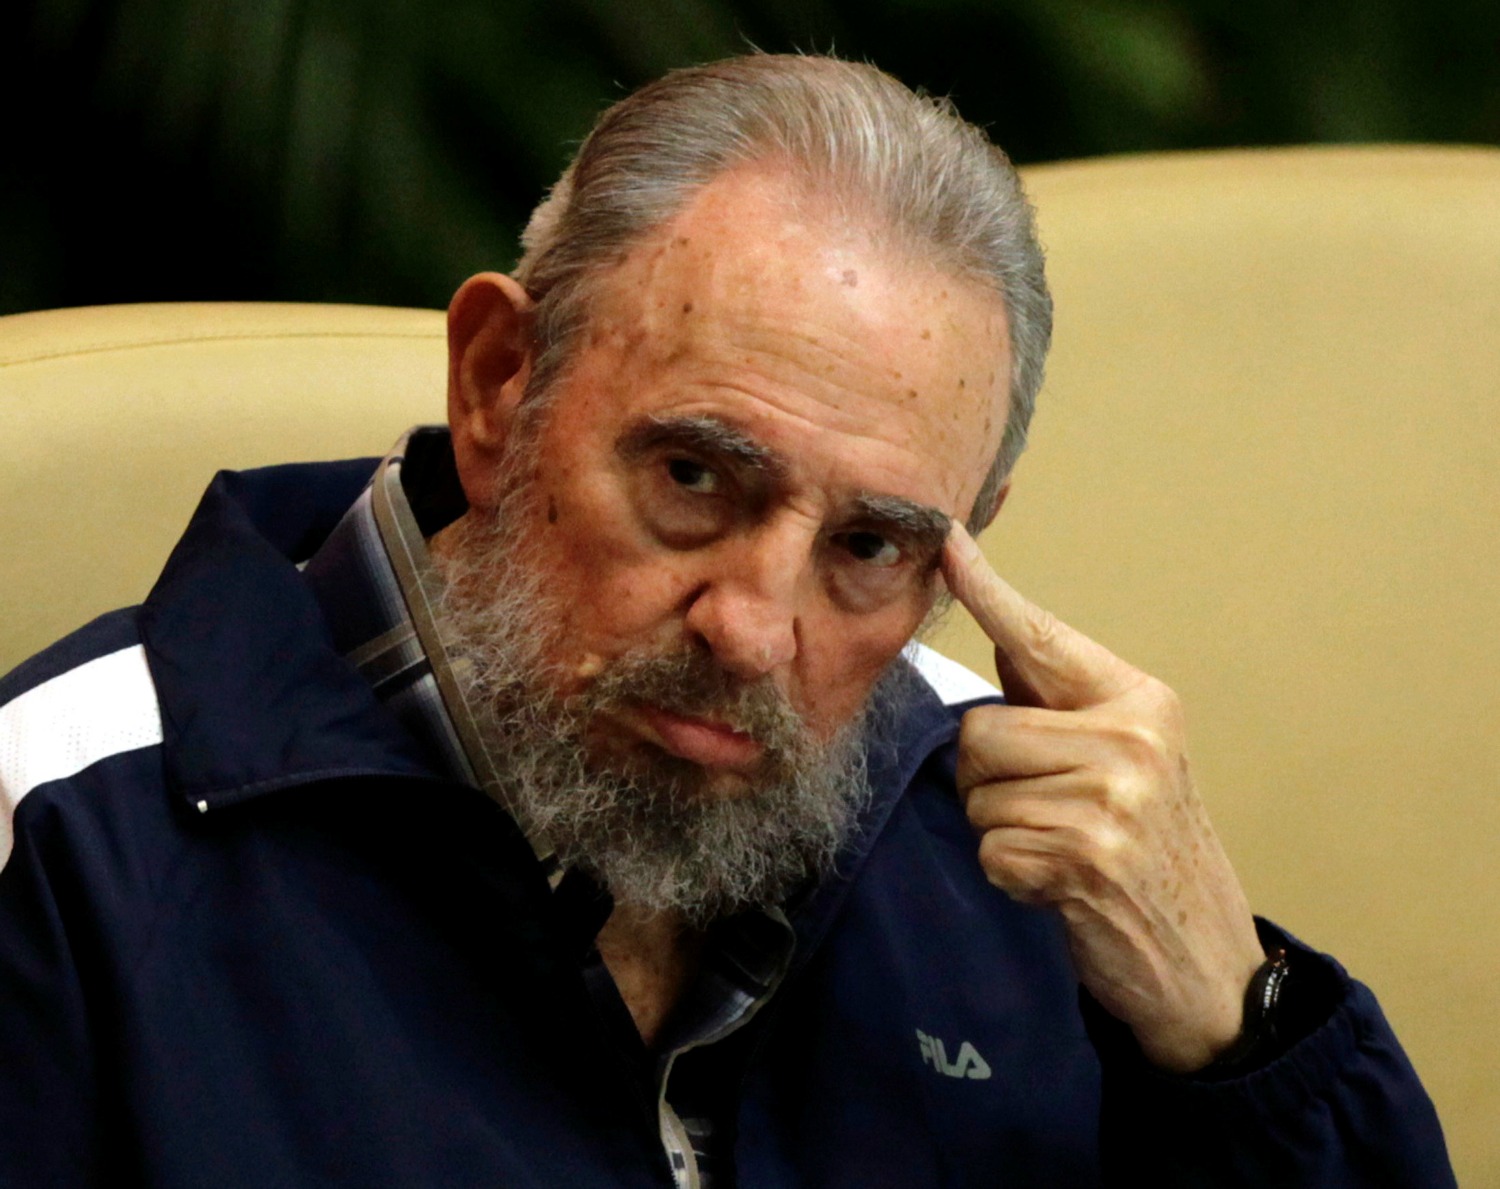 Muere Fidel Castro a los 90 años